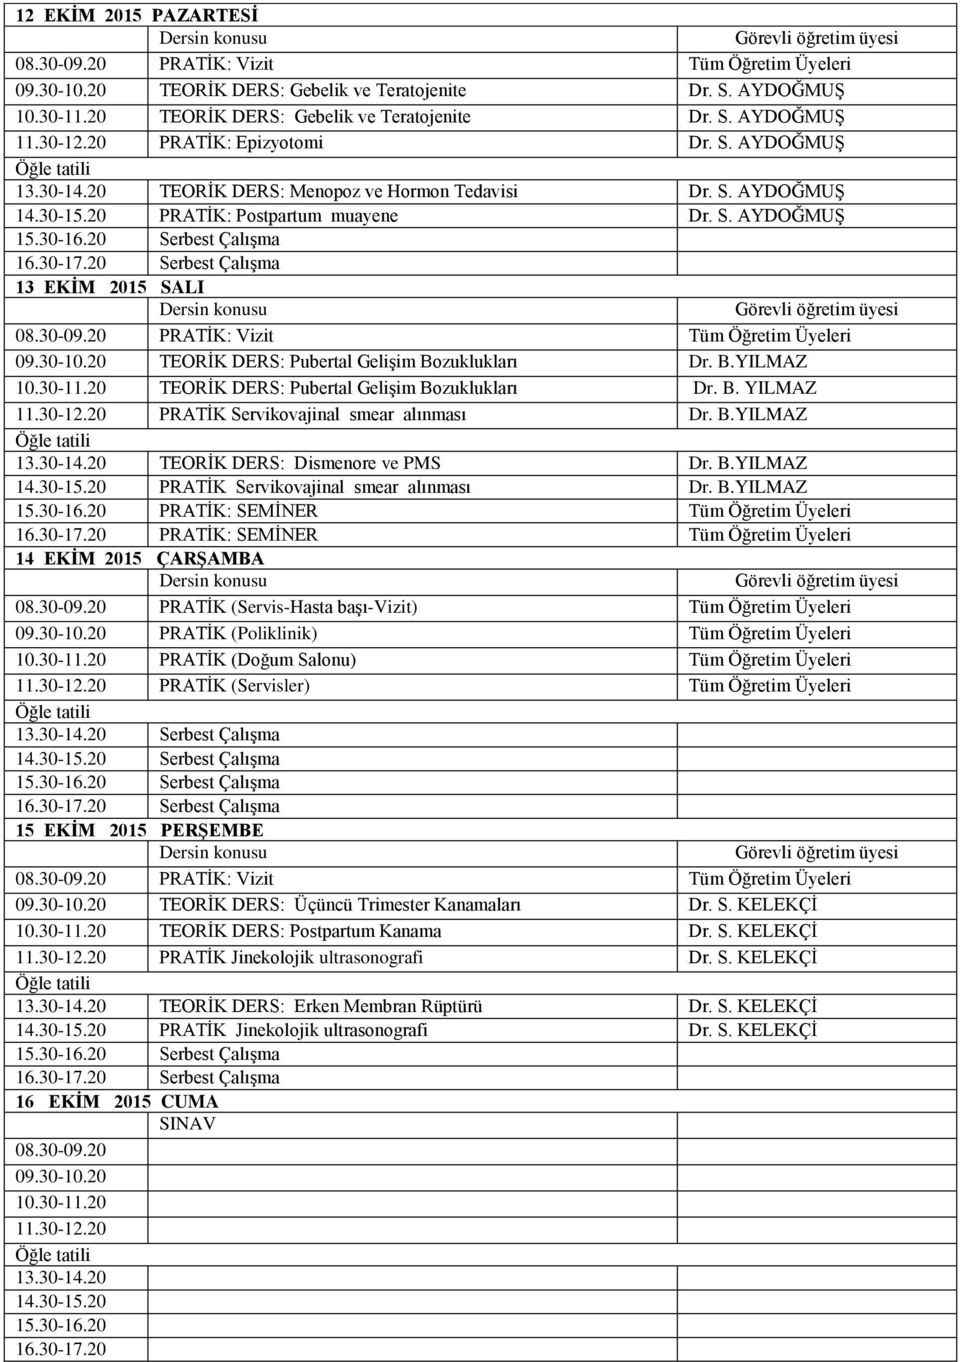 30-11.20 TEORĠK DERS: Pubertal GeliĢim Bozuklukları Dr. B. YILMAZ 11.30-12.20 PRATĠK Servikovajinal smear alınması Dr. B.YILMAZ 13.30-14.20 TEORĠK DERS: Dismenore ve PMS Dr. B.YILMAZ 14.30-15.